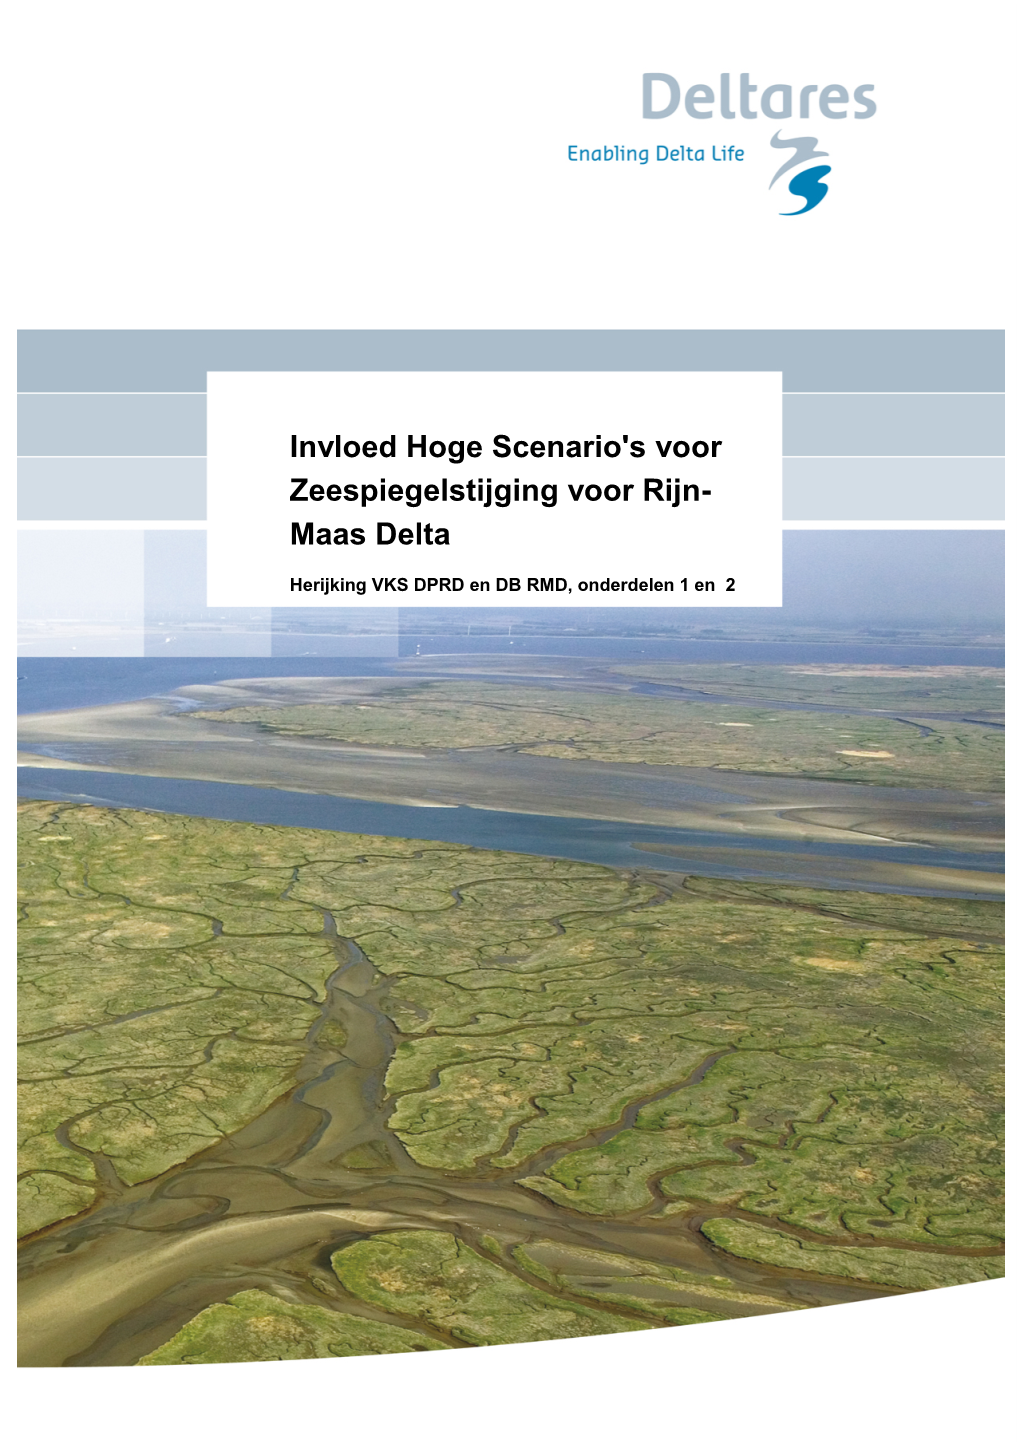 'Invloed Hoge Scenario's Voor Zeespiegelstijging Voor Rijn- Maas